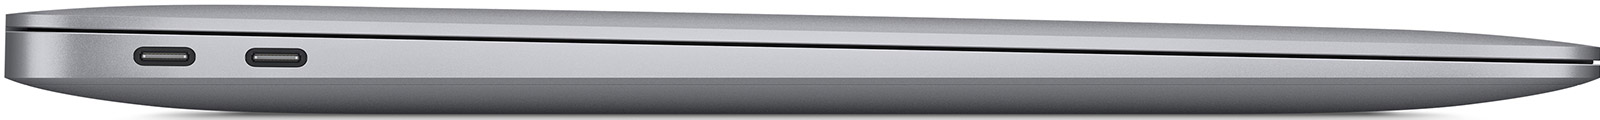 Apple-MacBook-Air-13-3-M1-8-Core-05.jpg